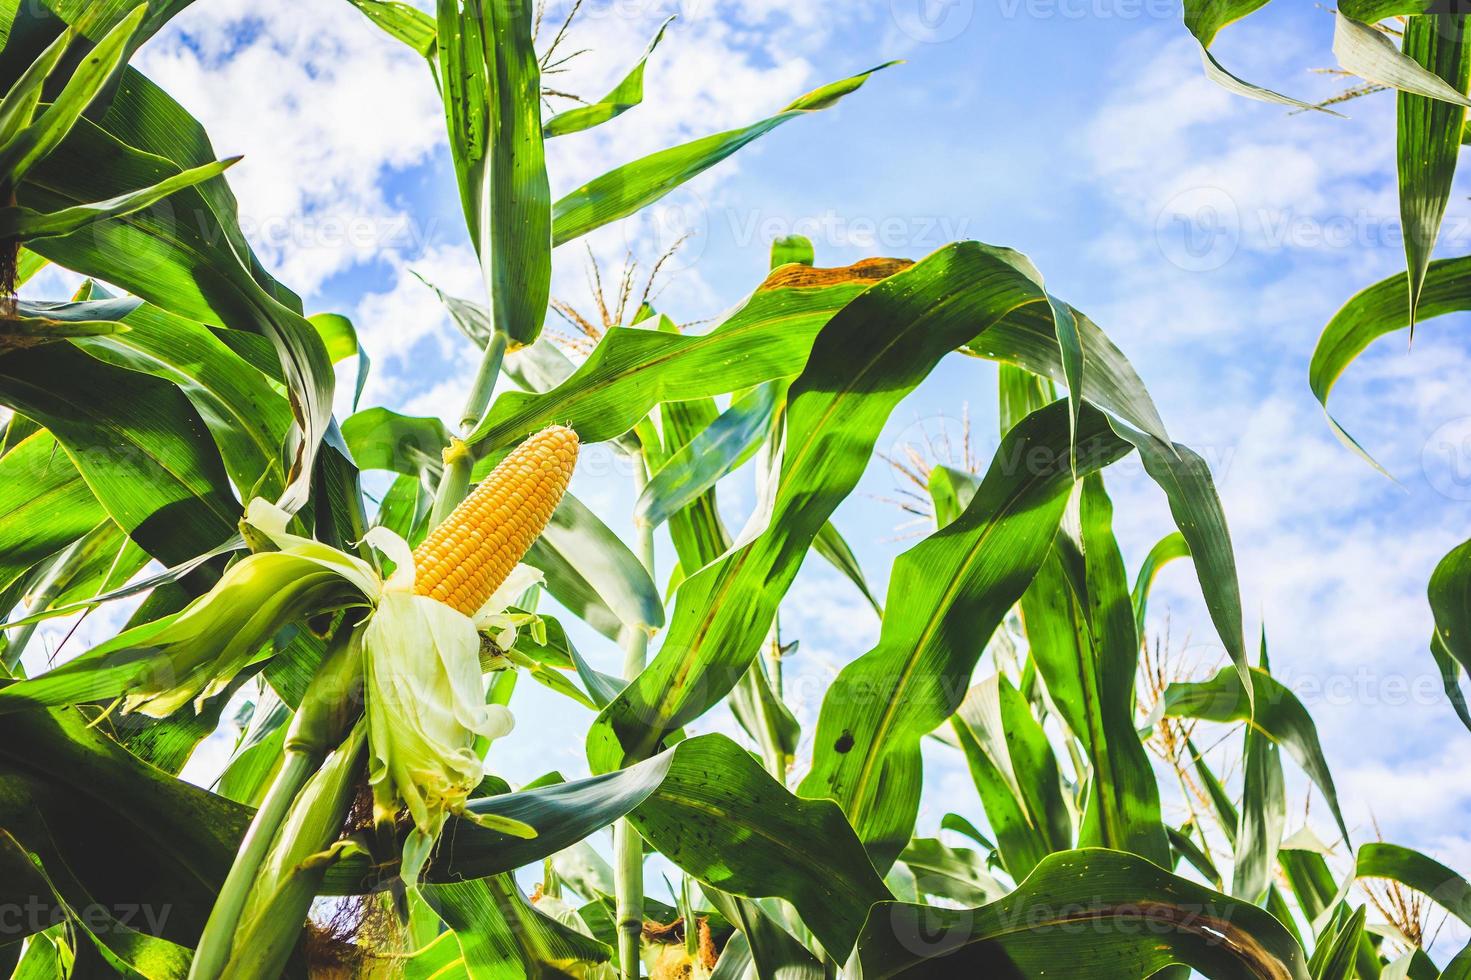 crecimiento de la mazorca de maíz en el campo agrícola al aire libre con nubes y cielo azul foto